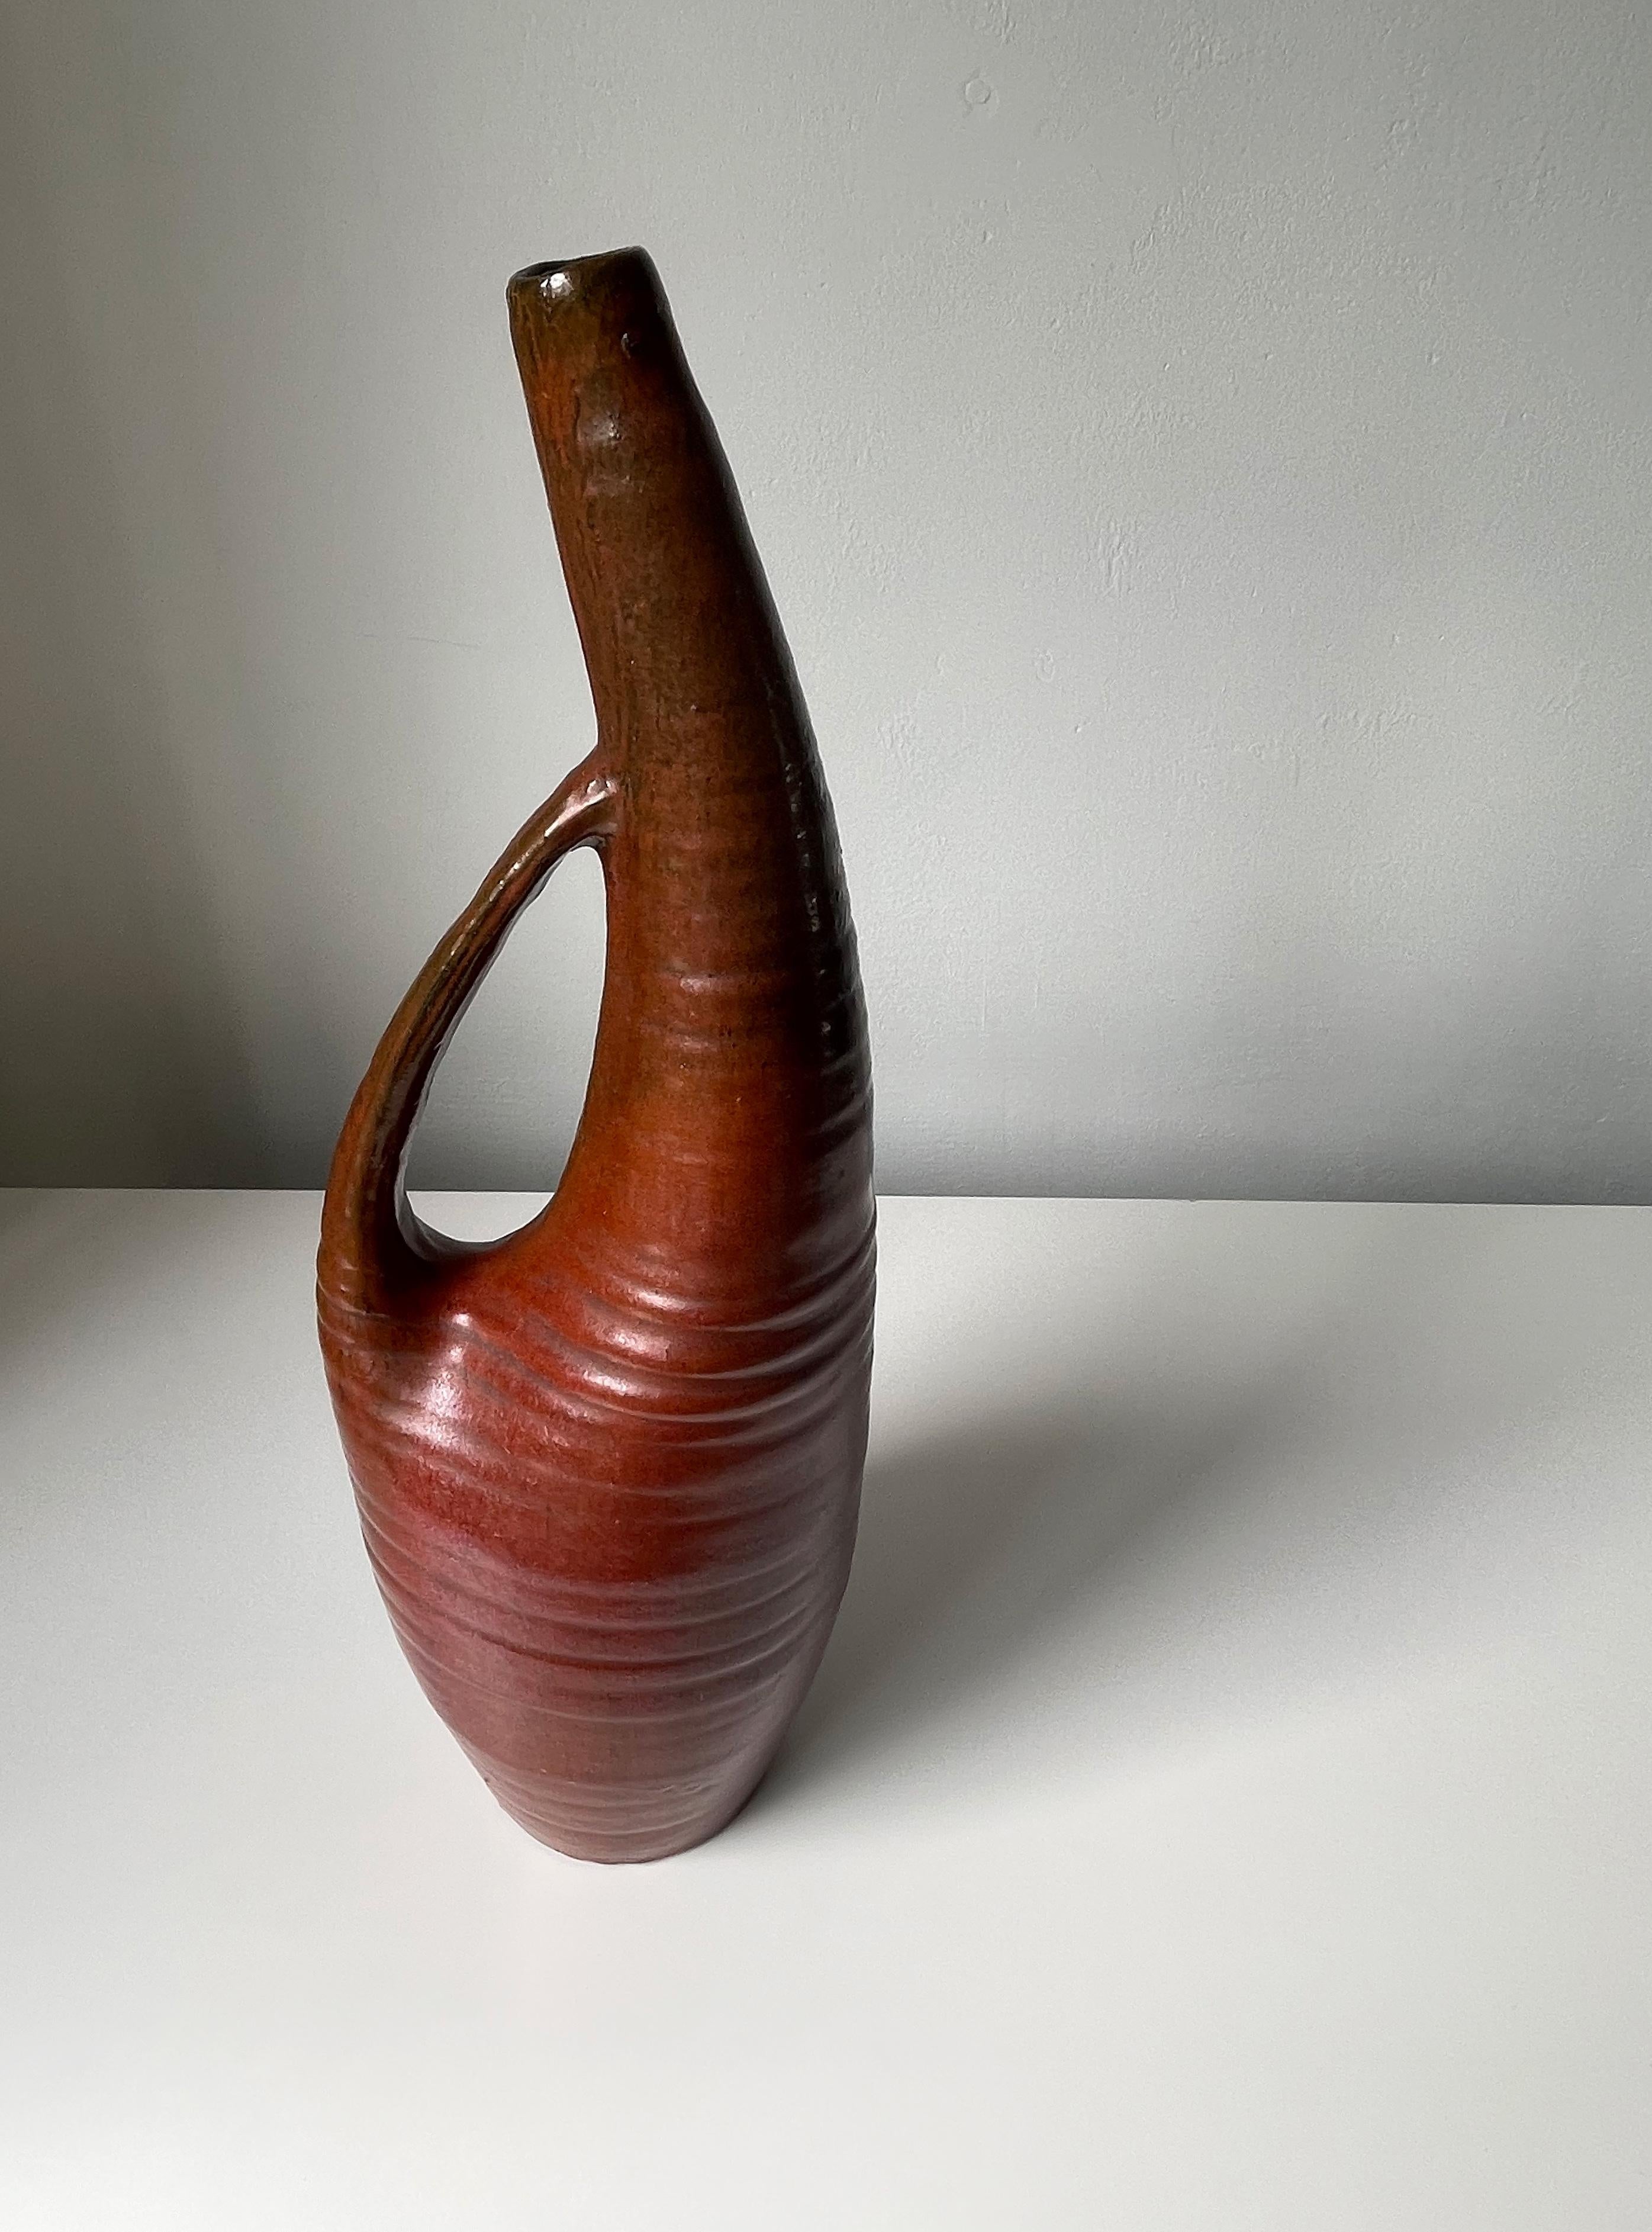 Hand-Painted Large Ceramic Art Sculptural Bottle Vase, 1960s For Sale